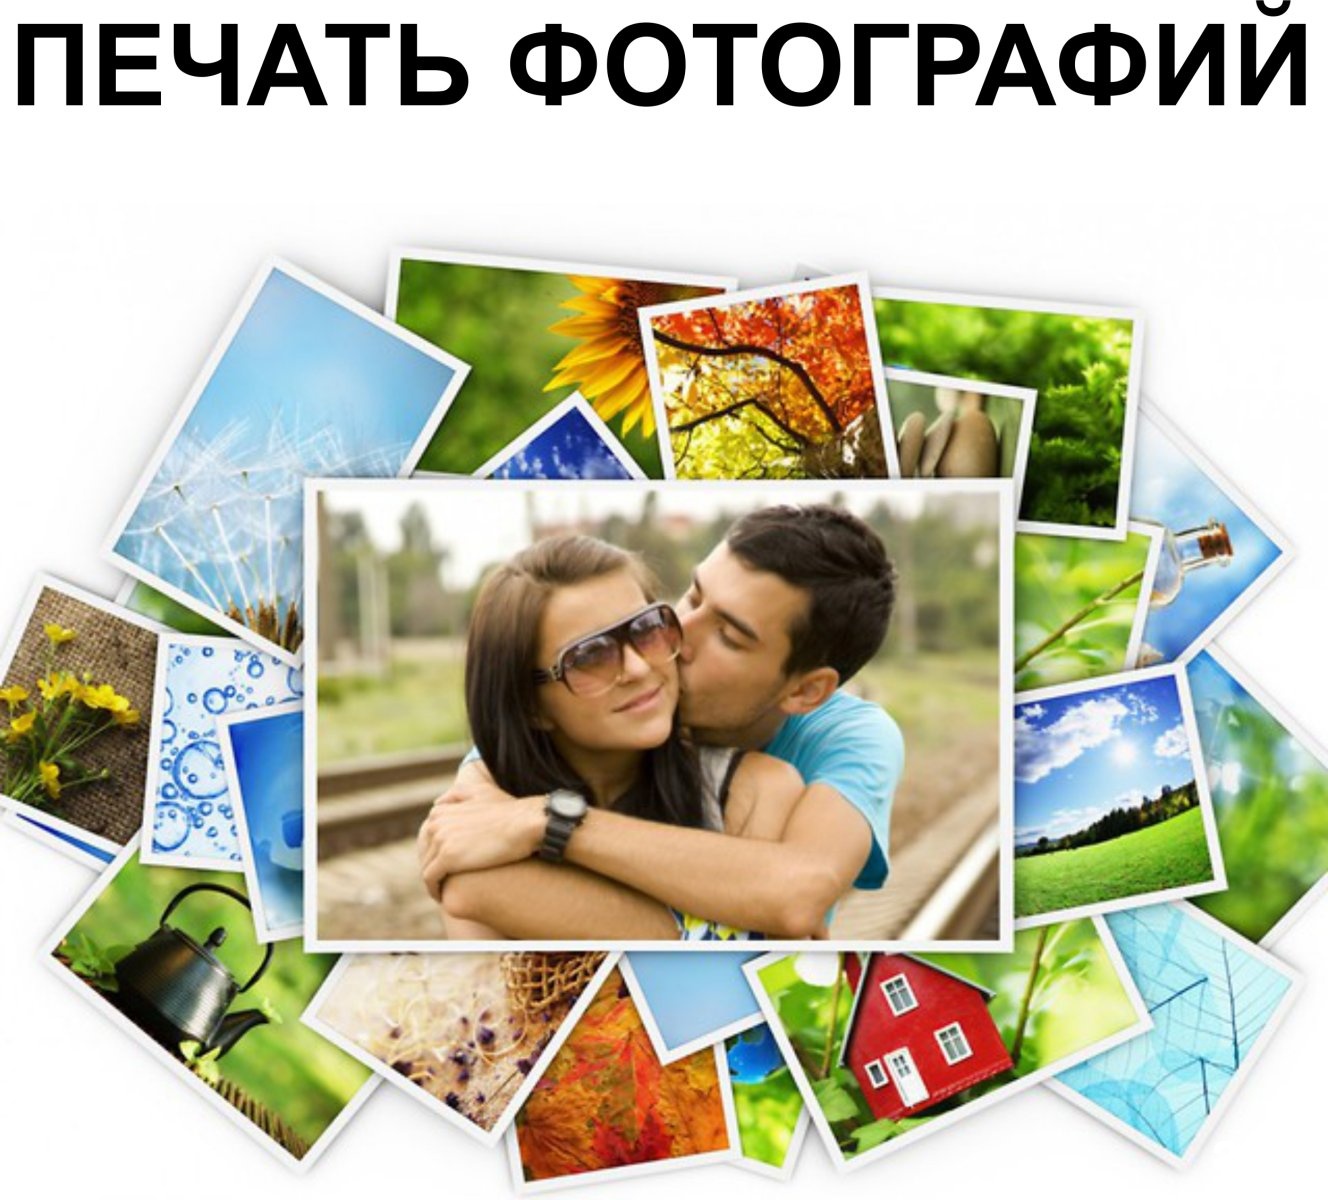 печать фотографий через интернет в москве